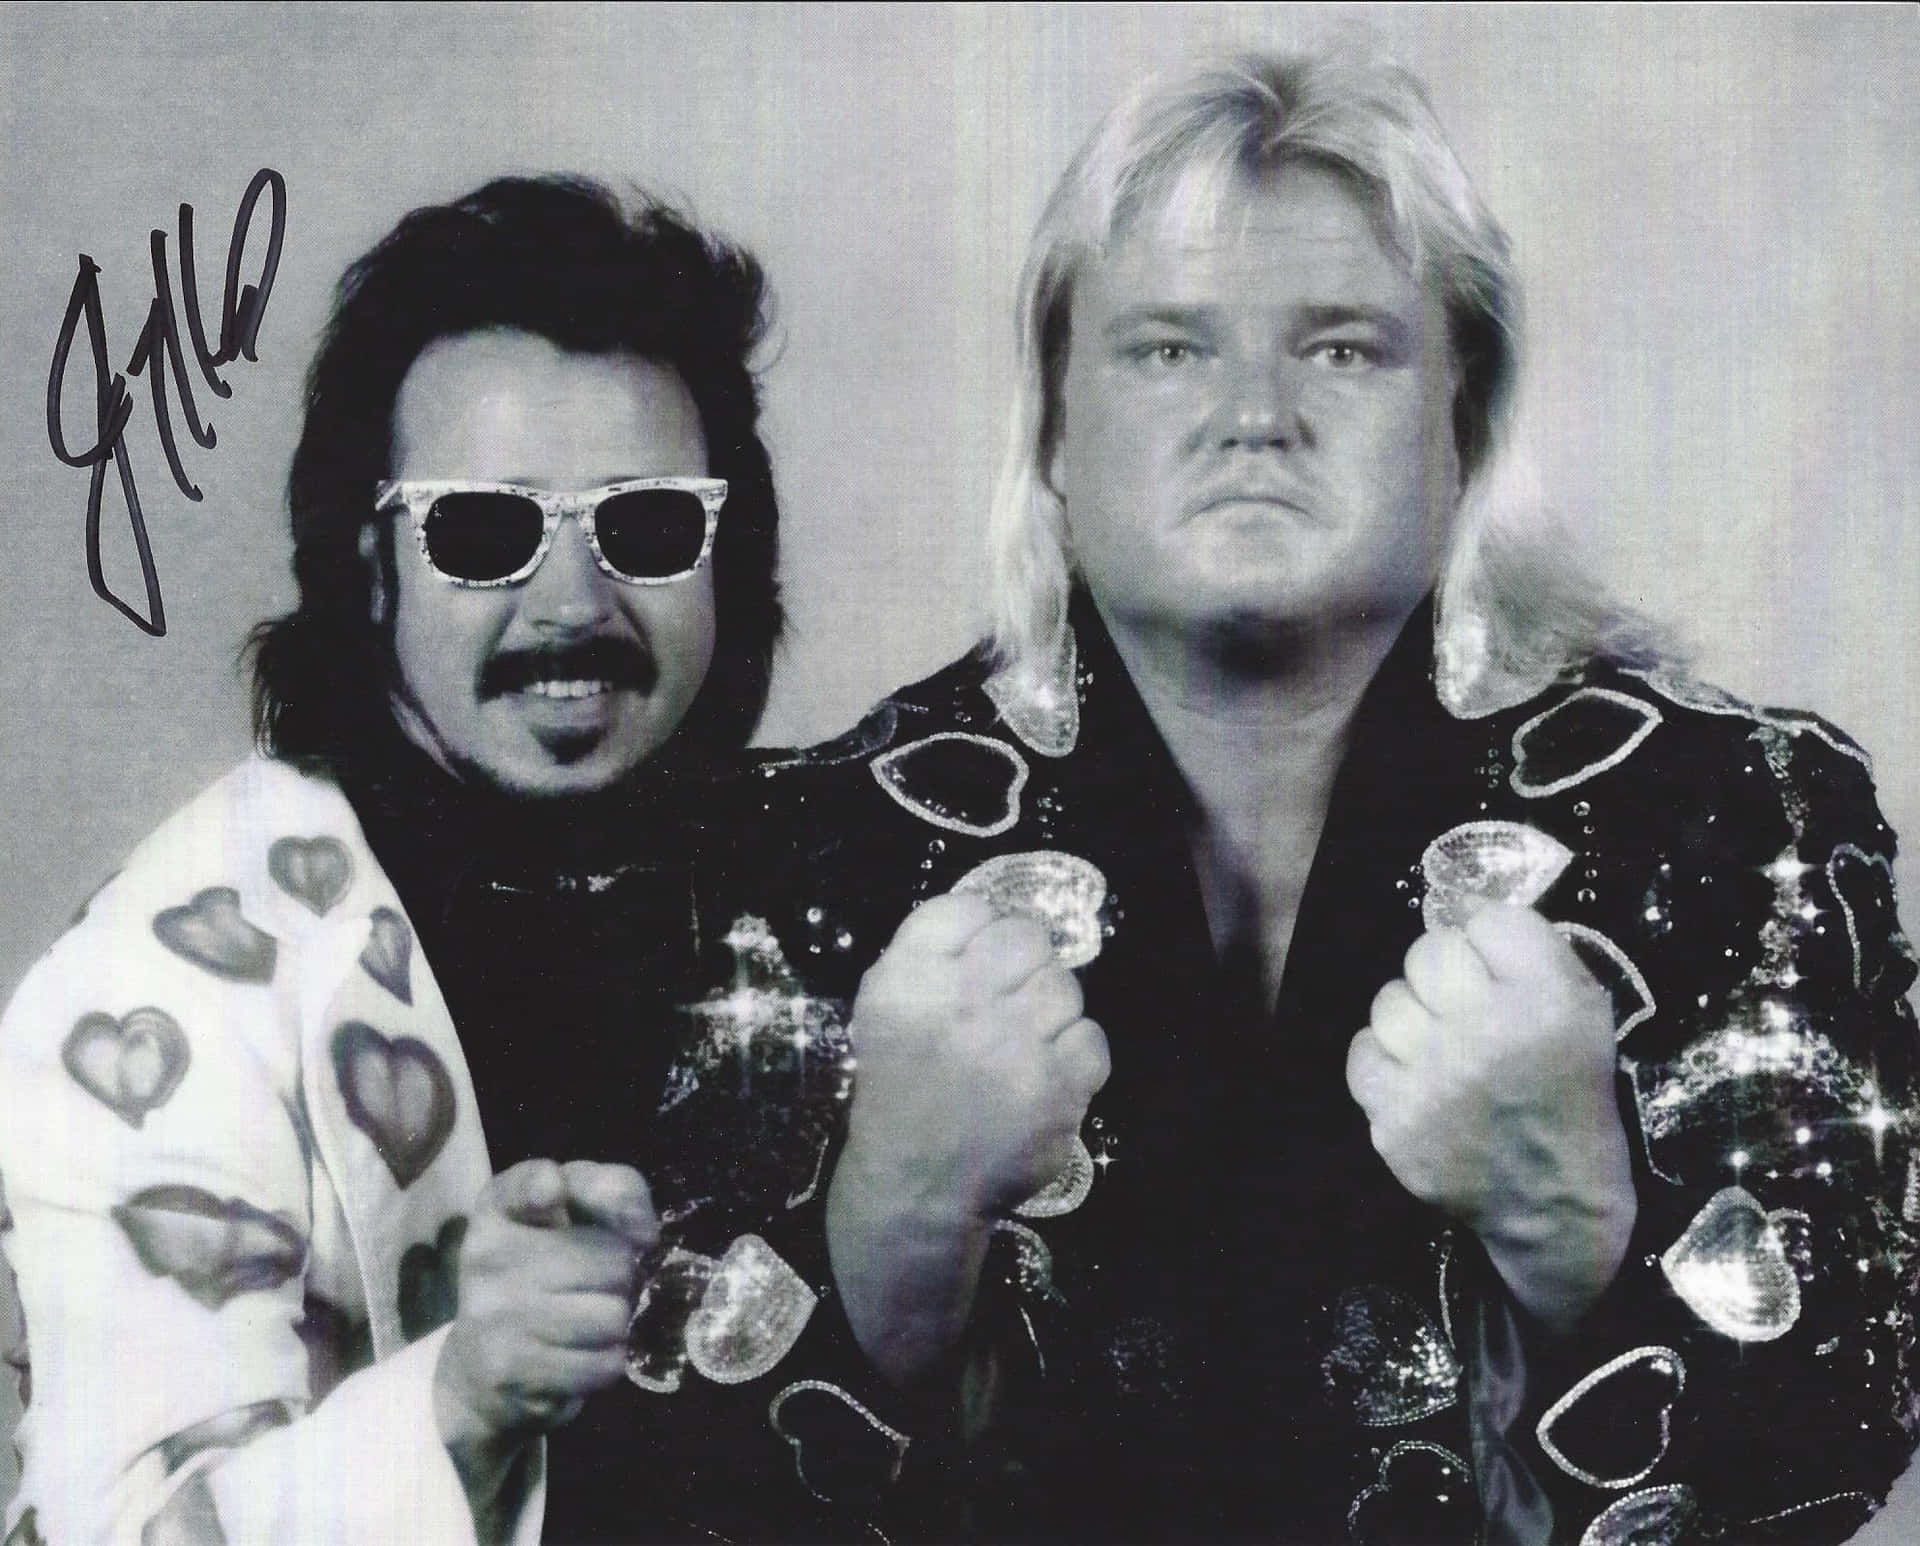 Greg Valentine og Jimmy Hart bryder stadig hjerter. Wallpaper